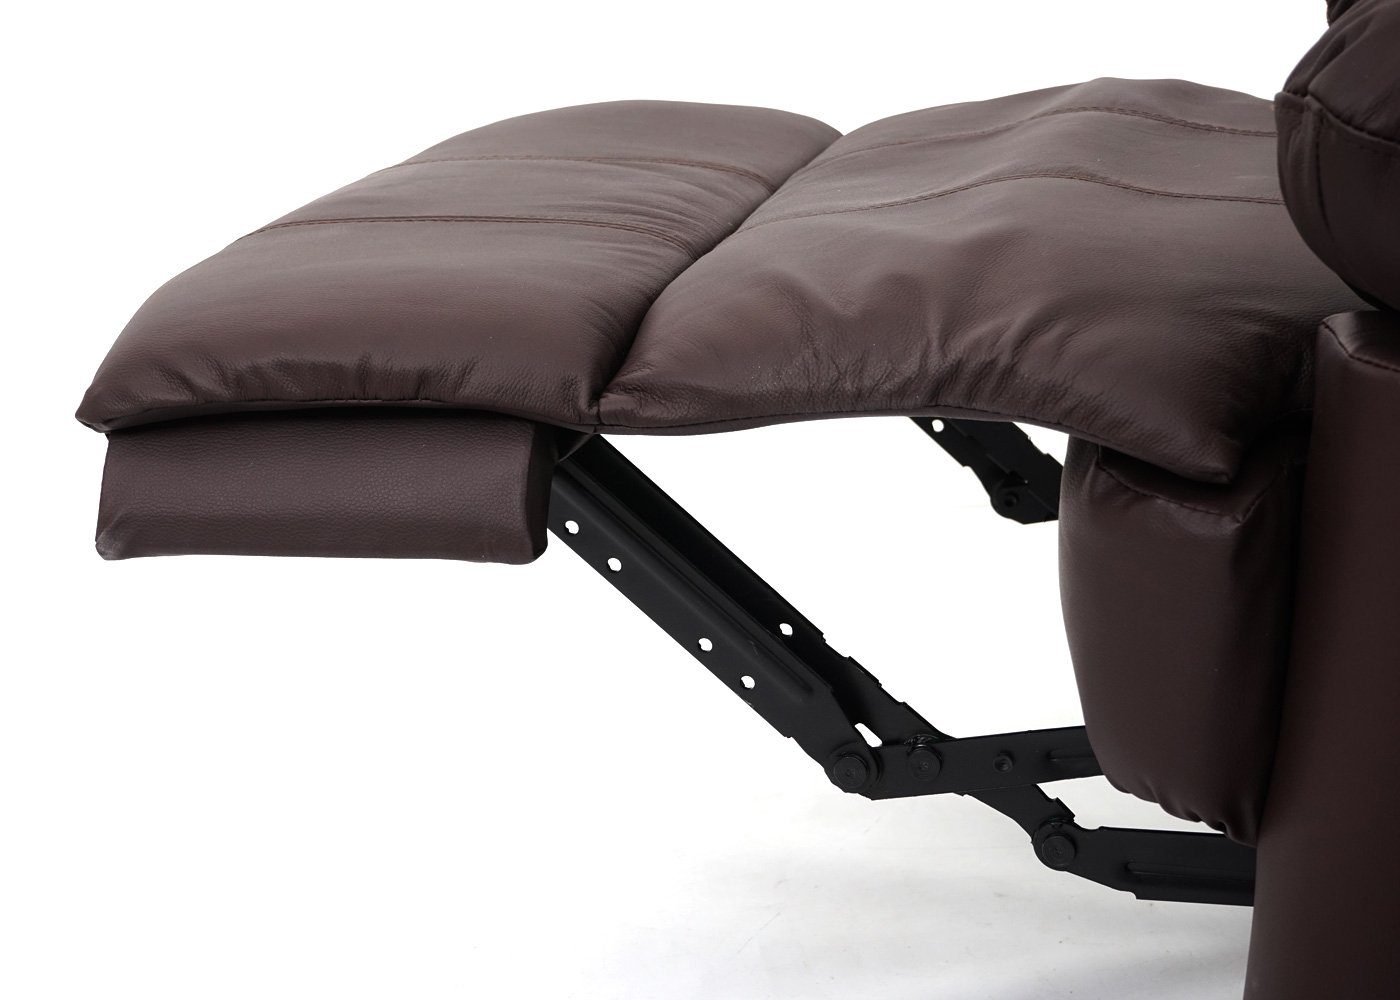 MCW TV-Sessel cm, Liegefläche: verstellbar, Rückenfläche, Liegefunktion 165 Fußstütze braun MCW-G15, Verstellbare